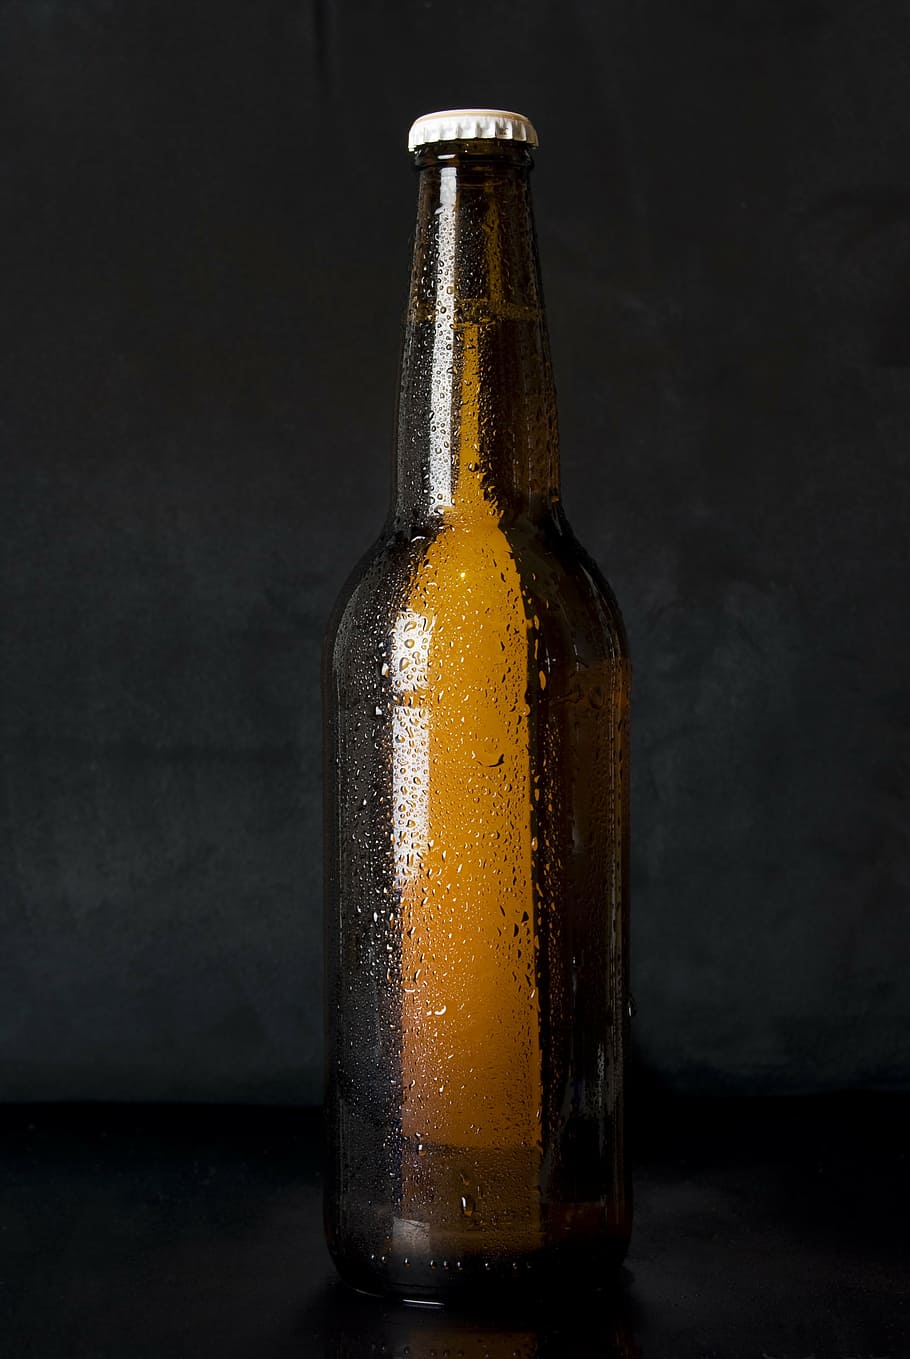 茶色, ガラス瓶, 上, 黒, 表面, ガラス, 瓶, ビール, アルコール, 醸造